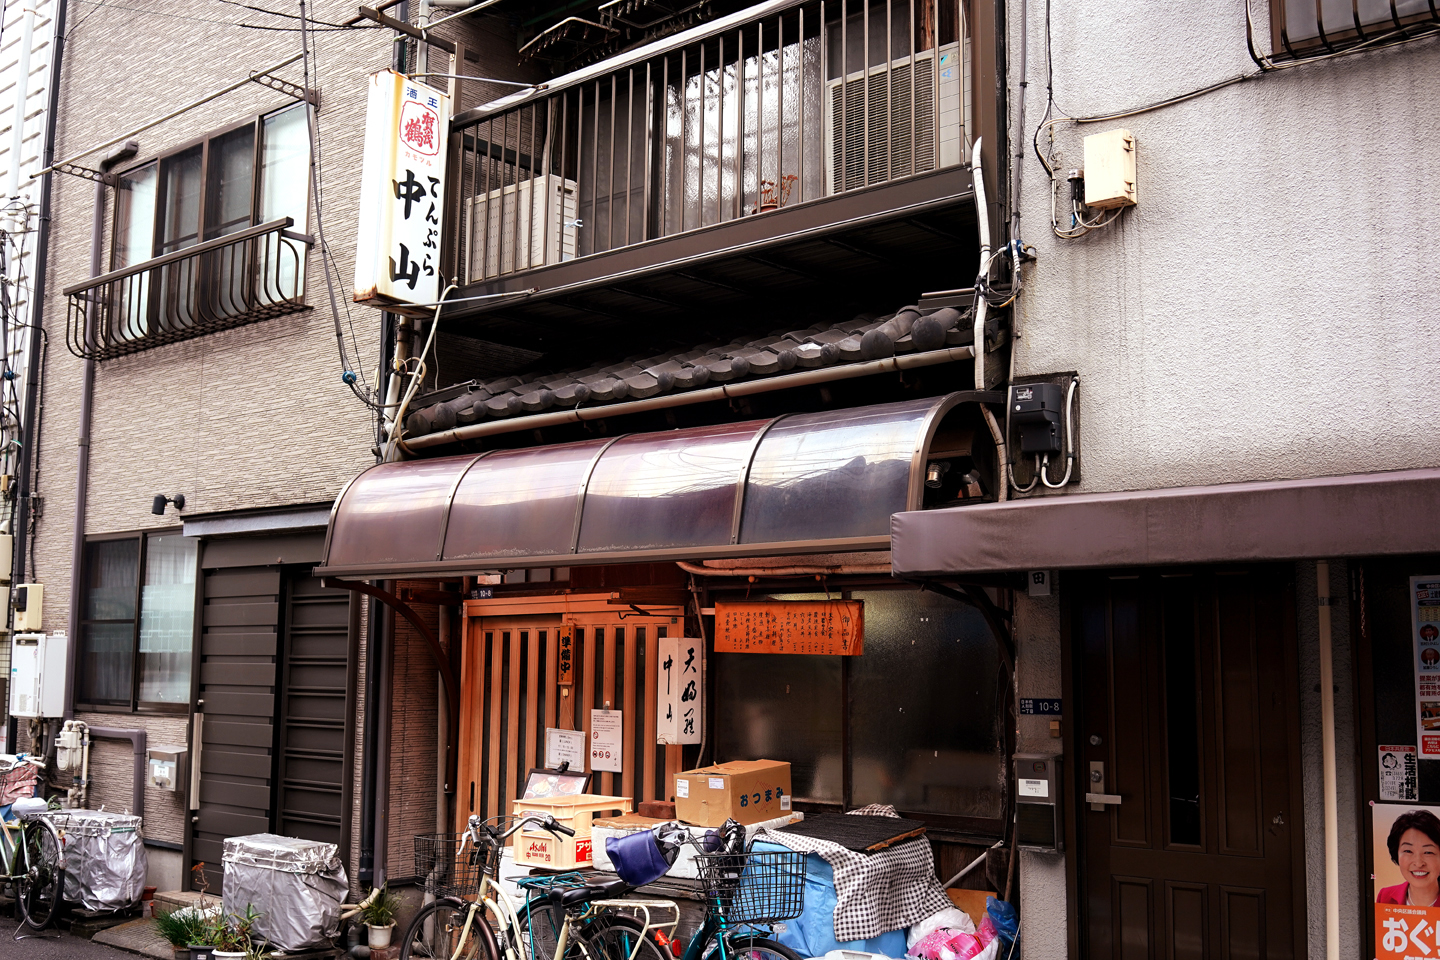 天ぷら 中山 孤独のグルメにも登場した東京人形町の老舗天ぷら店 黄昏ドライブイン コスプレカメコはデジタル一眼の夢を見るか